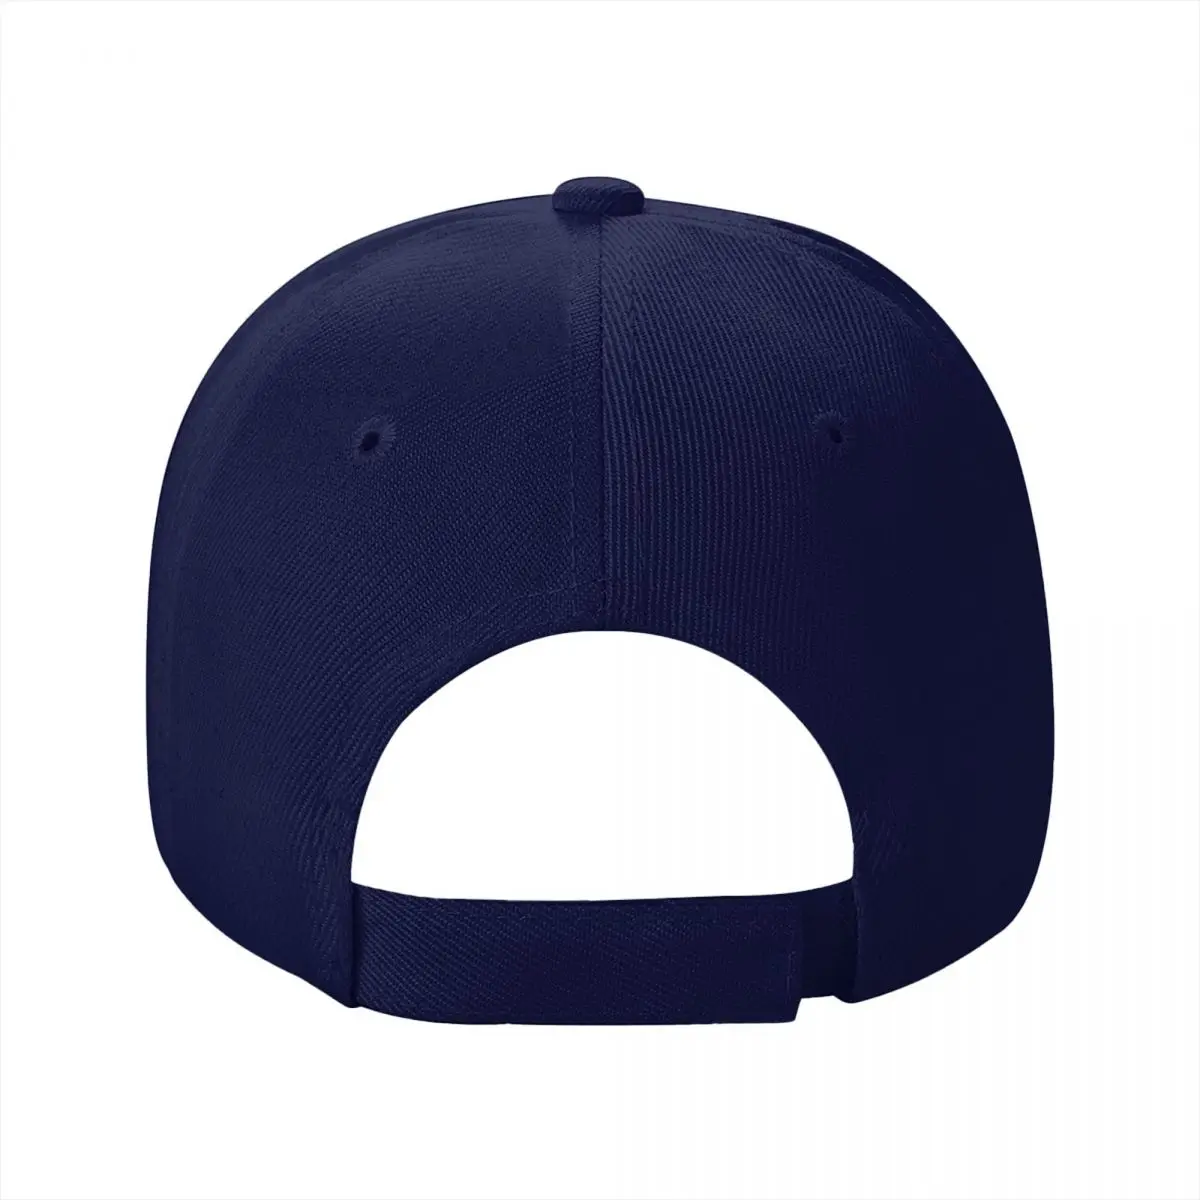 Yeni ÇOCUKLAR BRYAN 2020 beyzbol şapkası Güneş Koruyucu Şapkalar beyzbol şapkası Kadın Şapkaları 2023 Erkek